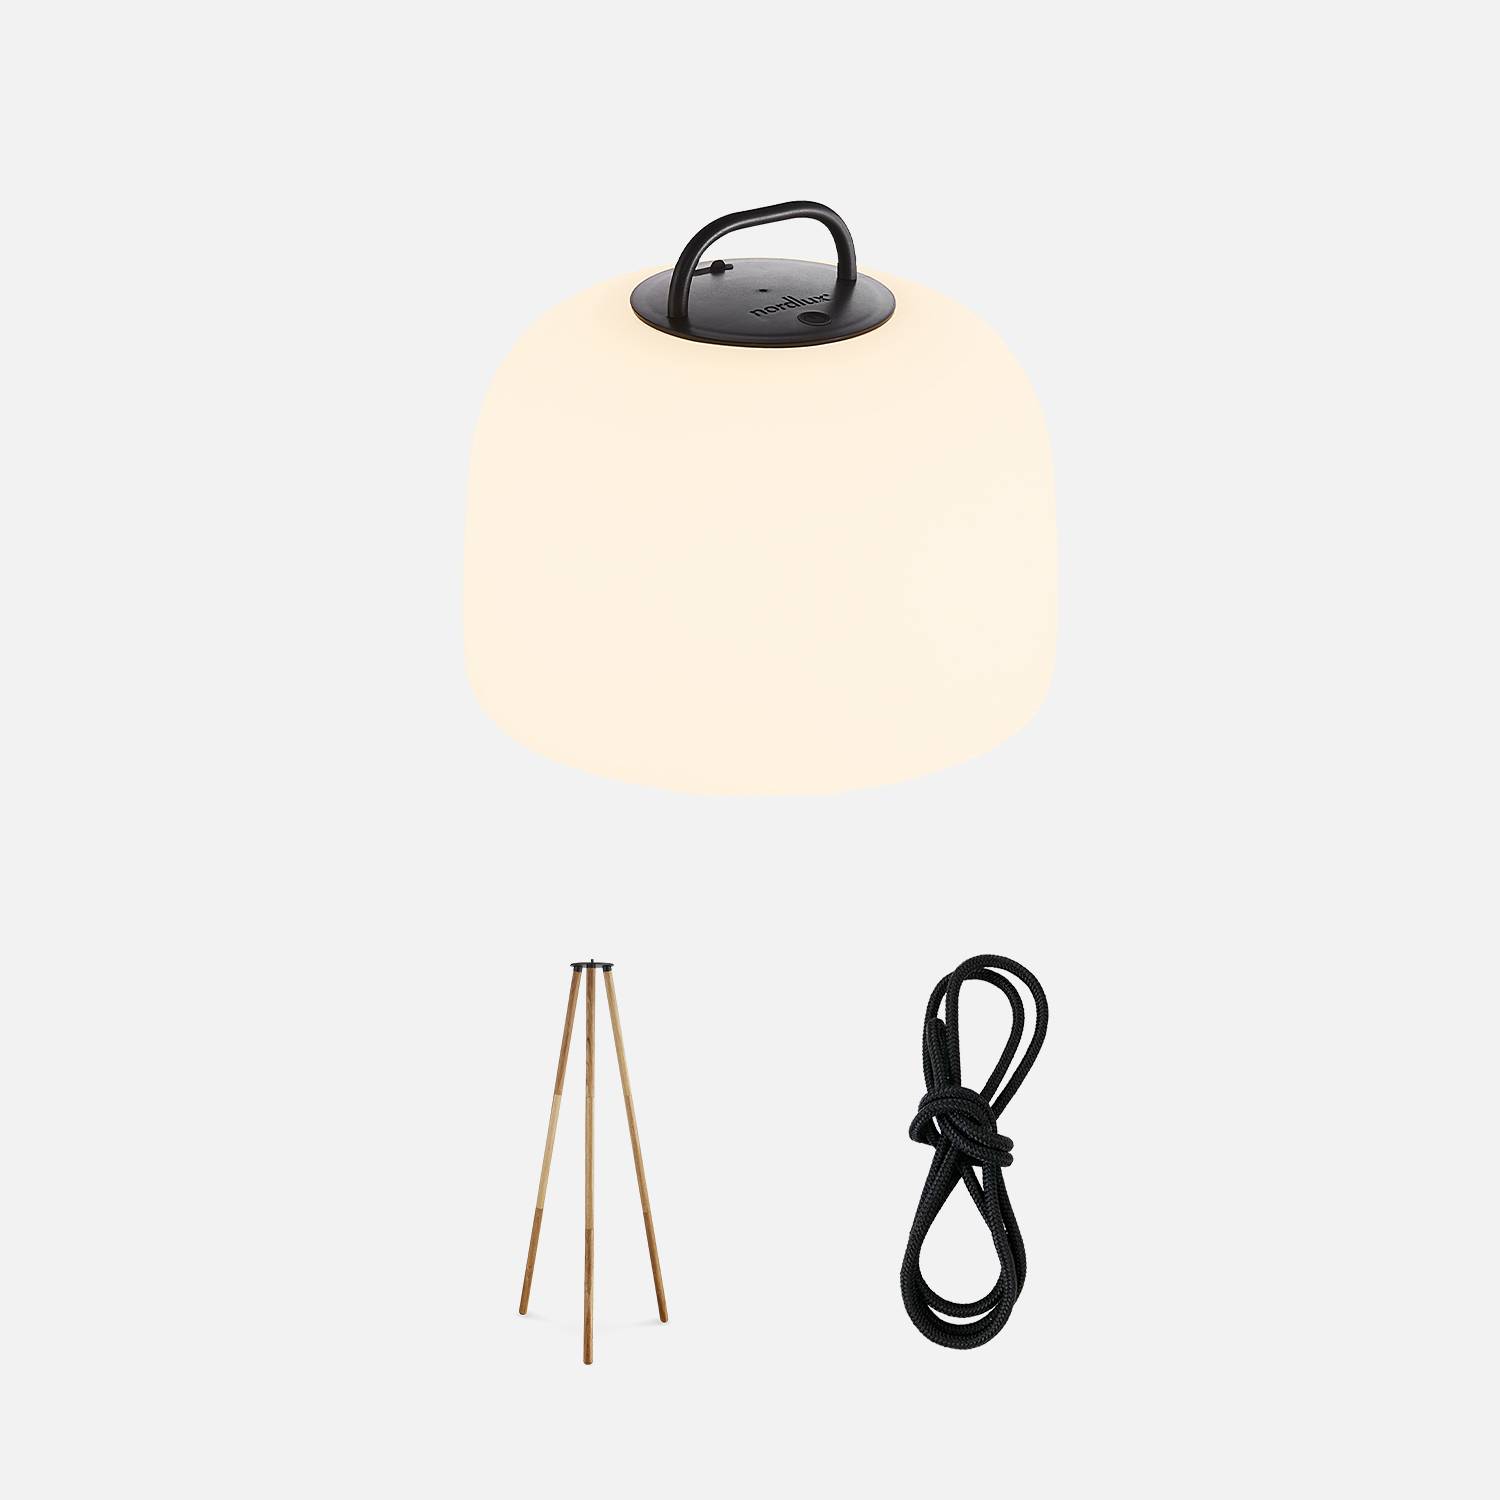 LED-Innenlampe 3 in 1 - TRIPADA XL - Lampe aus Kunststoff mit Füßen aus Hevea-Holz, Ø36cm aufladbar, zum Aufhängen, mit Stativ 1m und Seil Photo2